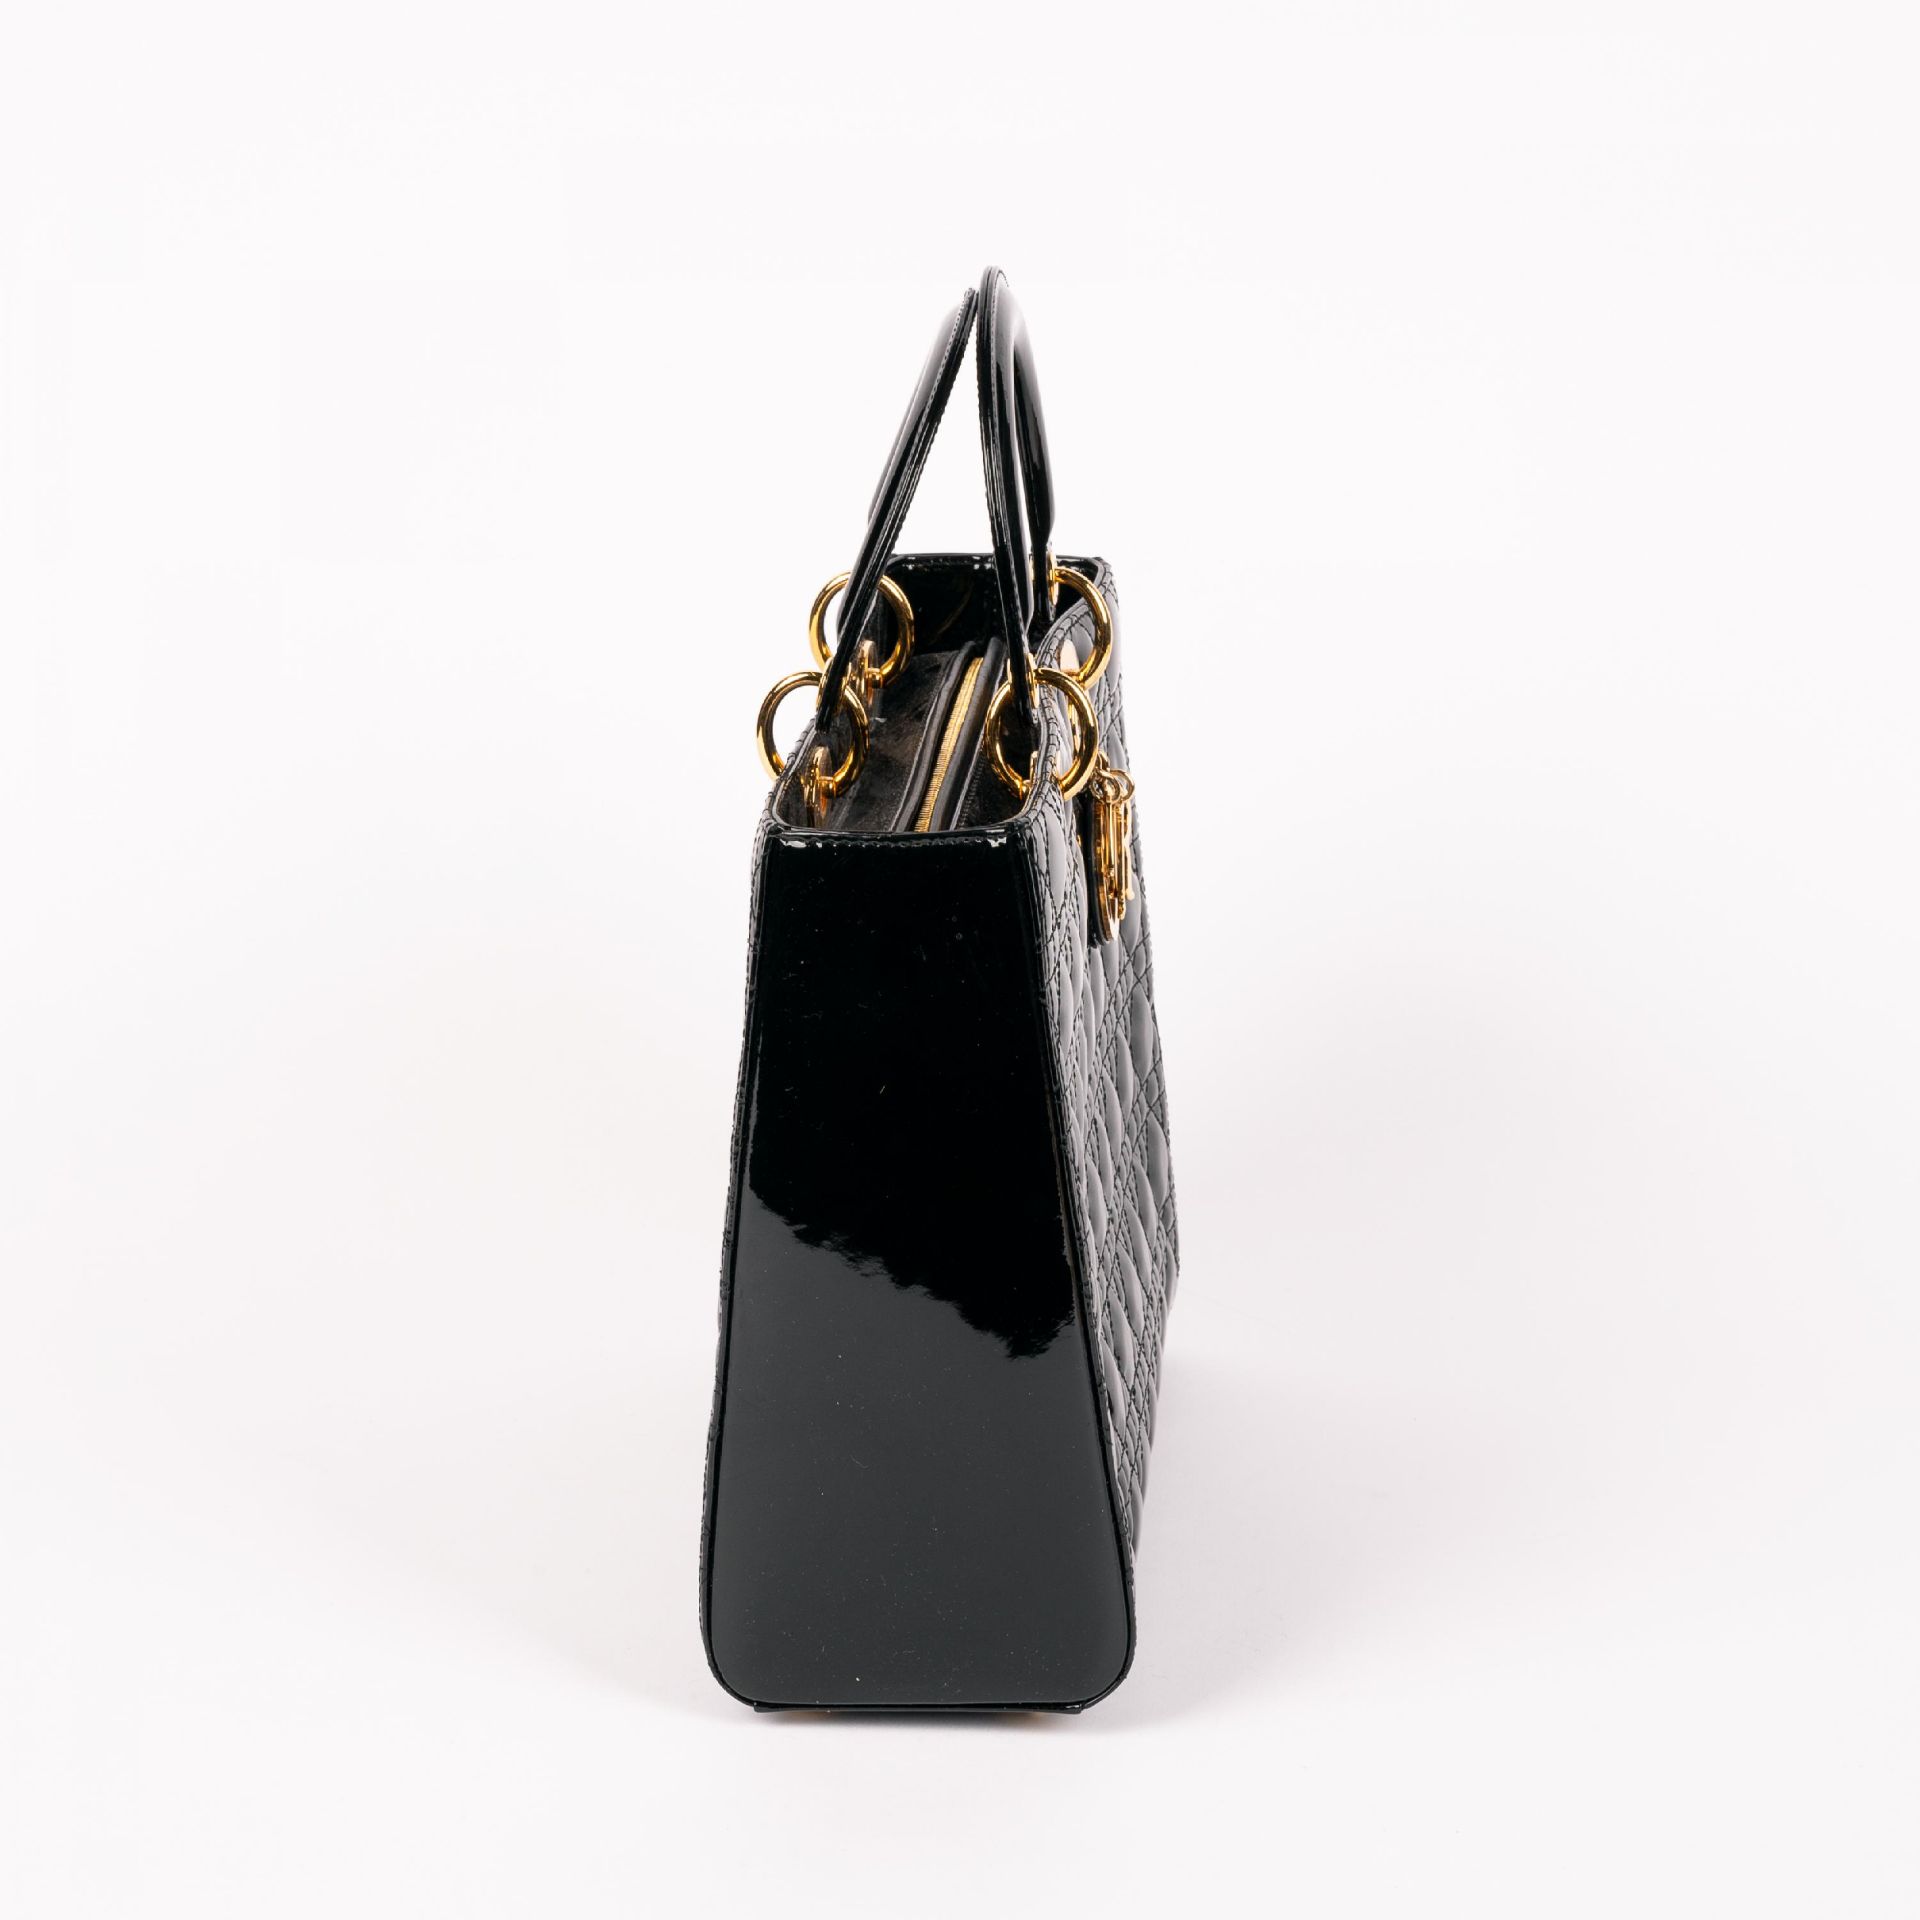 Christian Dior: Handtasche 'Lady Dior' - Bild 2 aus 6